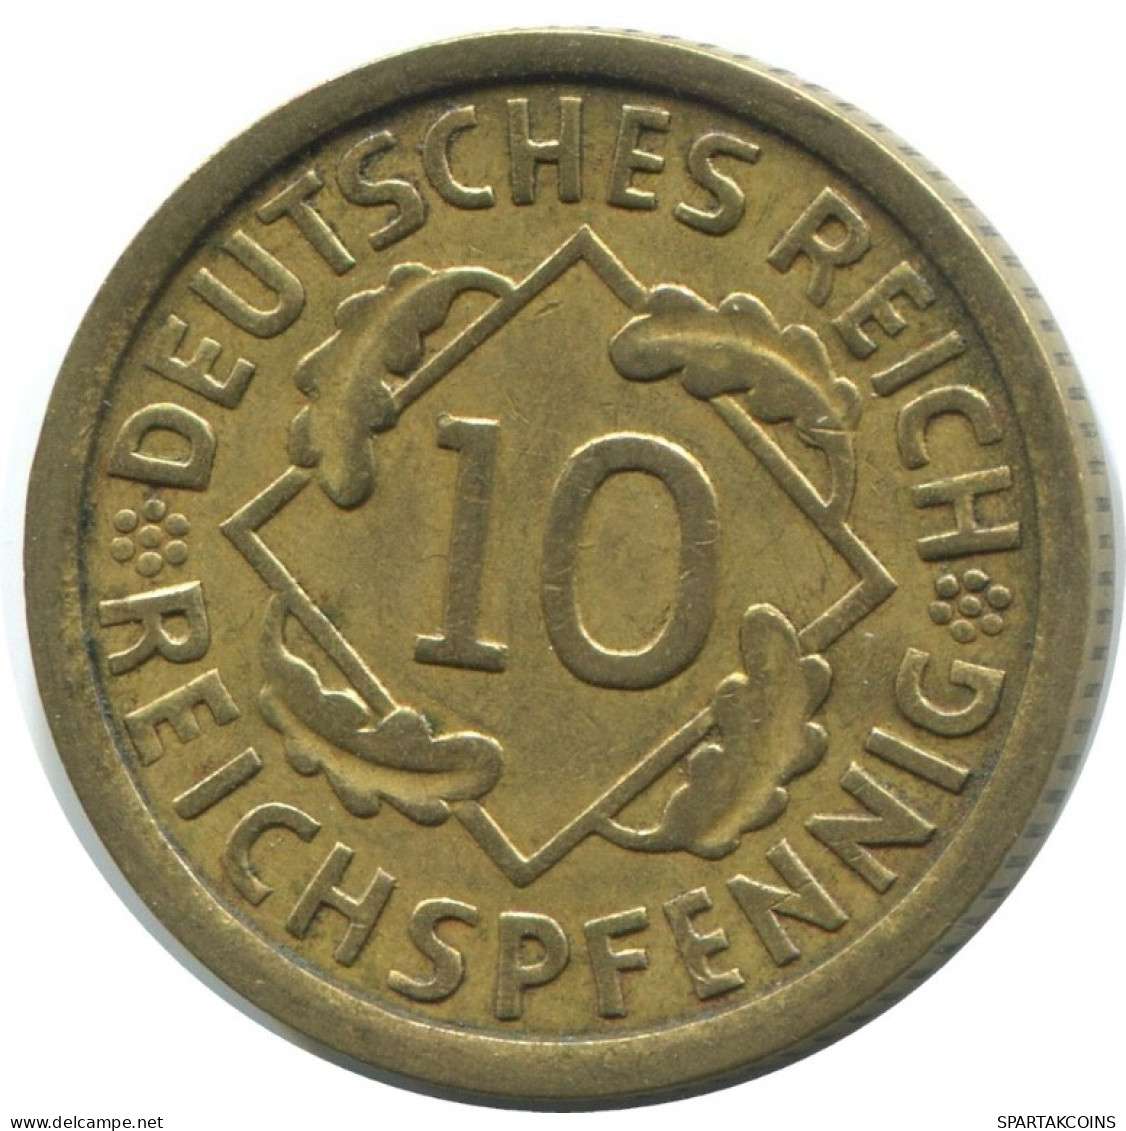 10 REICHSPFENNIG 1929 A ALLEMAGNE Pièce GERMANY #AE350.F.A - 10 Renten- & 10 Reichspfennig